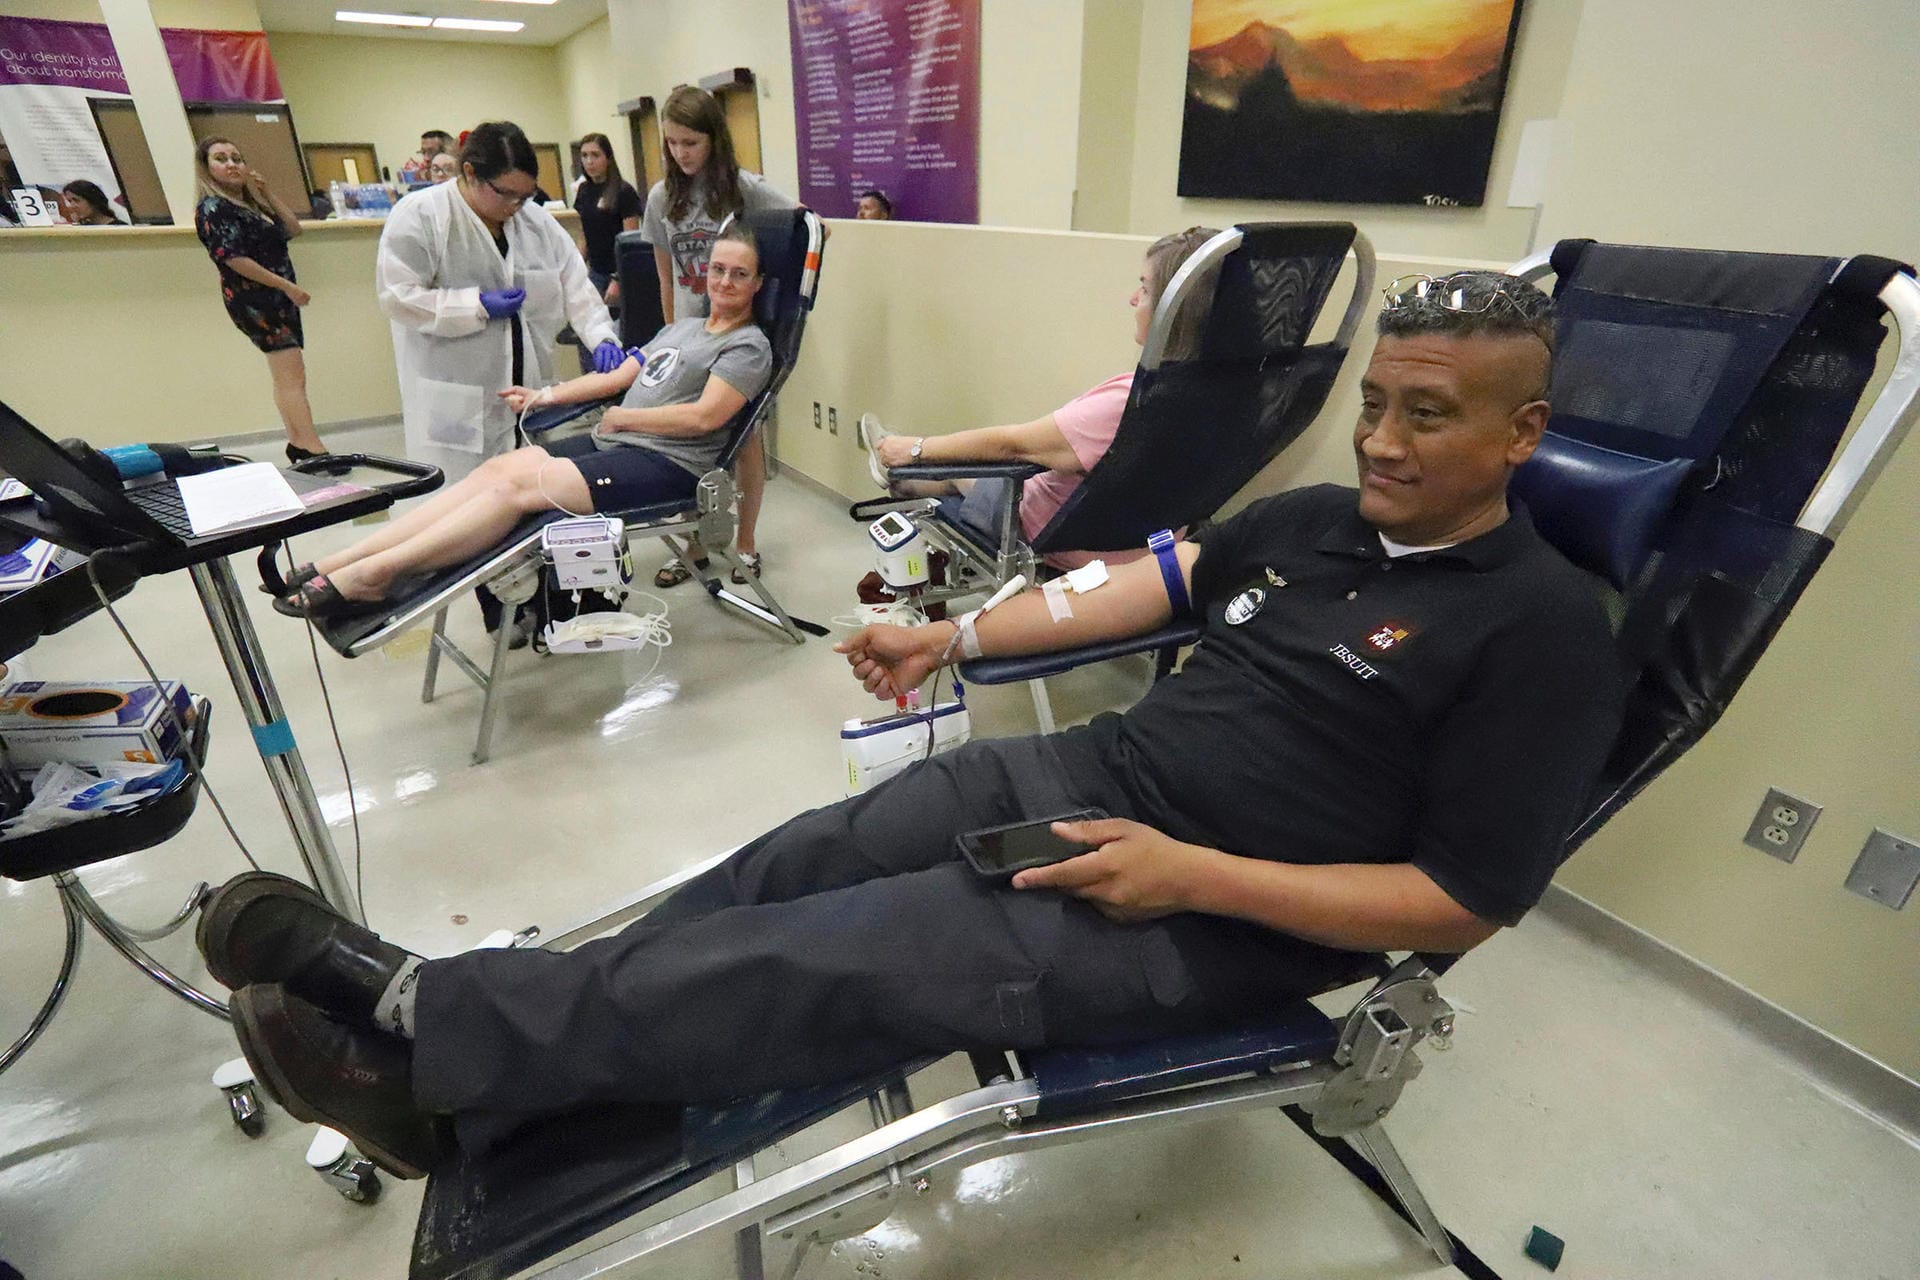 Nach der Schreckenstat spenden zahlreiche Menschen Blut, um verletzten Opfern zu helfen.